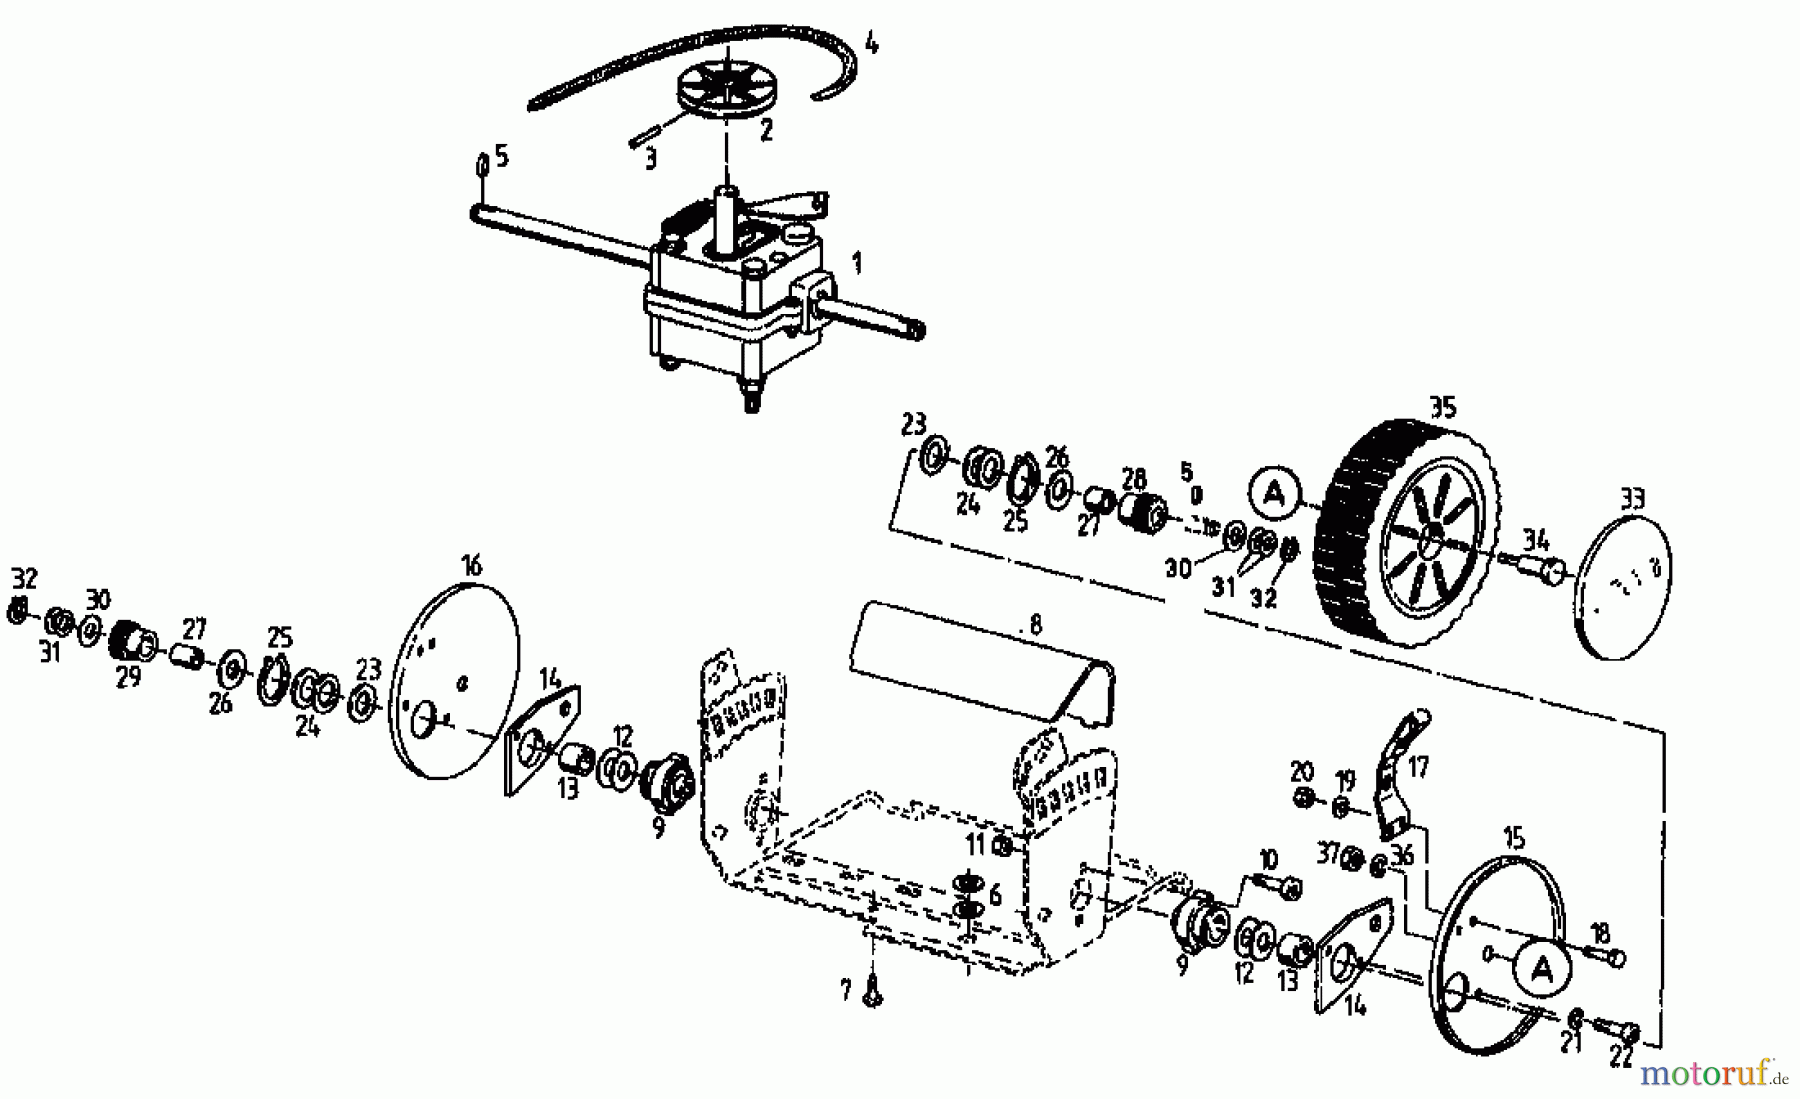  Gutbrod Motormäher mit Antrieb ECO BR 5 04033.09  (1996) Getriebe, Räder, Schnitthöhenverstellung